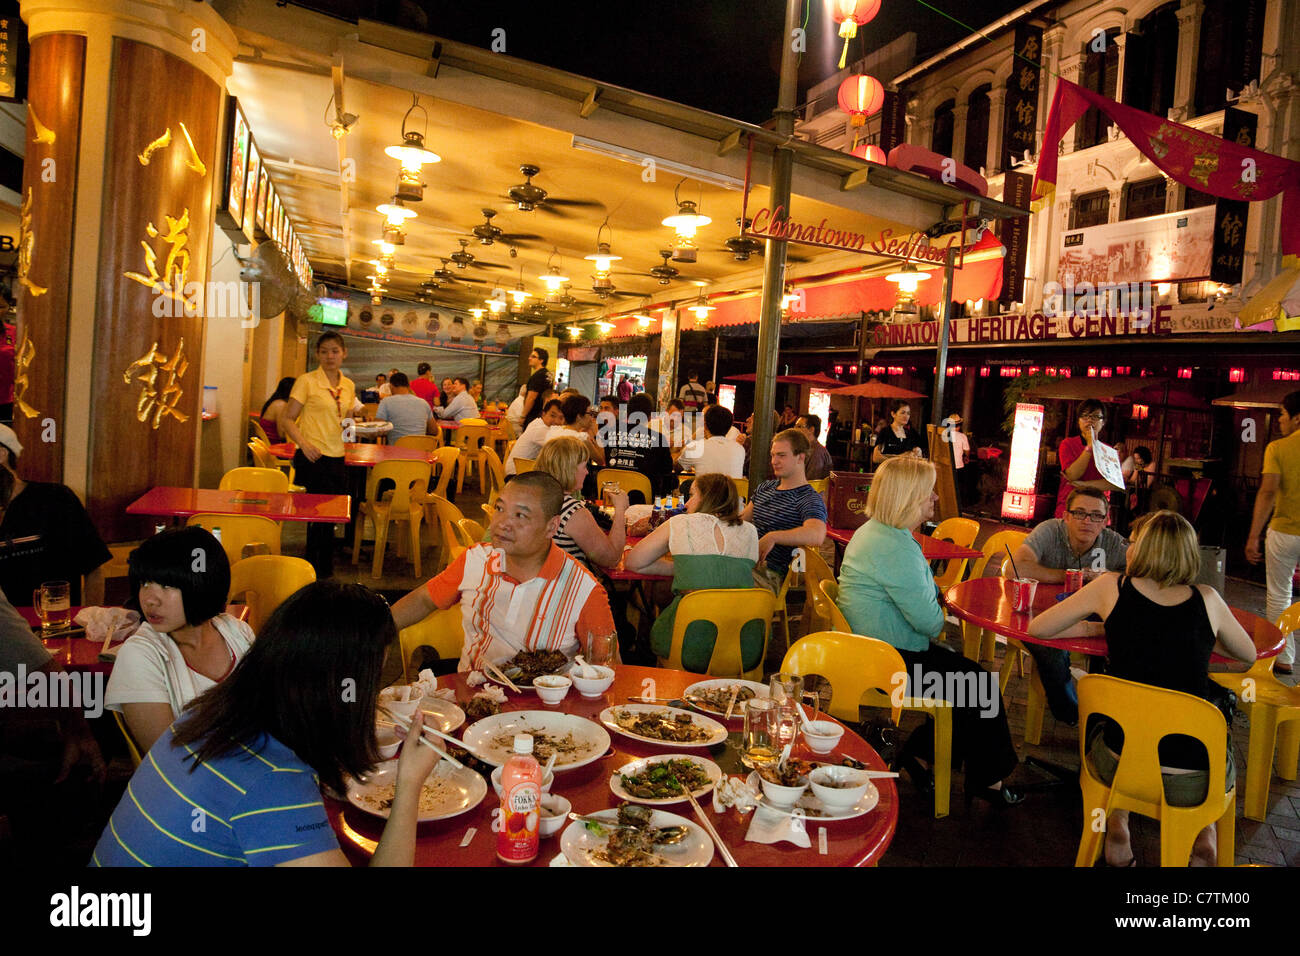 Straßenszene mit Menschen essen Essen im chinesischen Restaurant Chinatown Singapur Asien Stockfoto